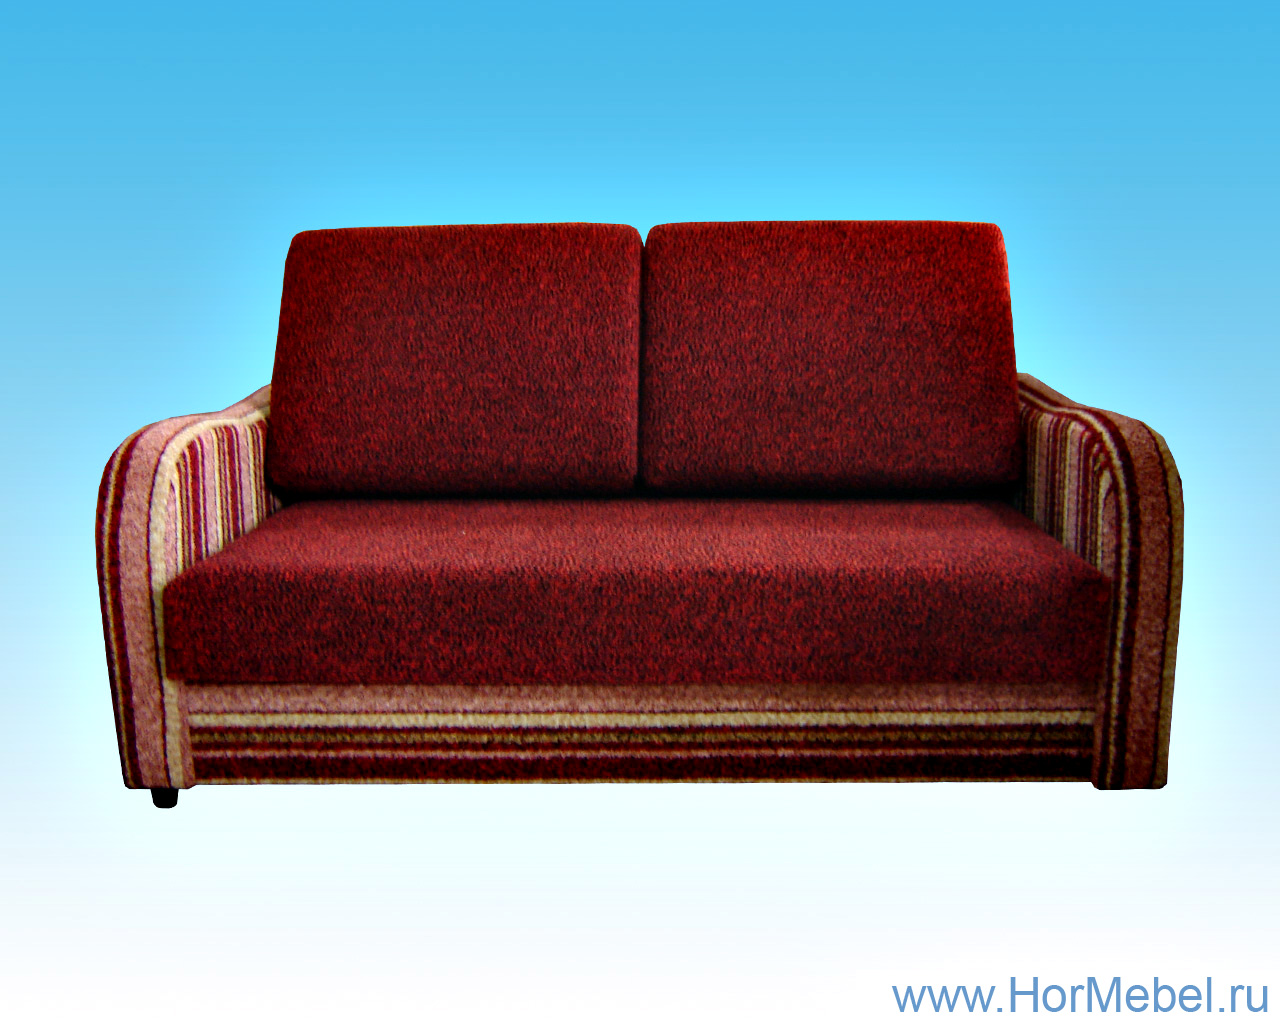 Малогабаритный диван с прямой боковиной